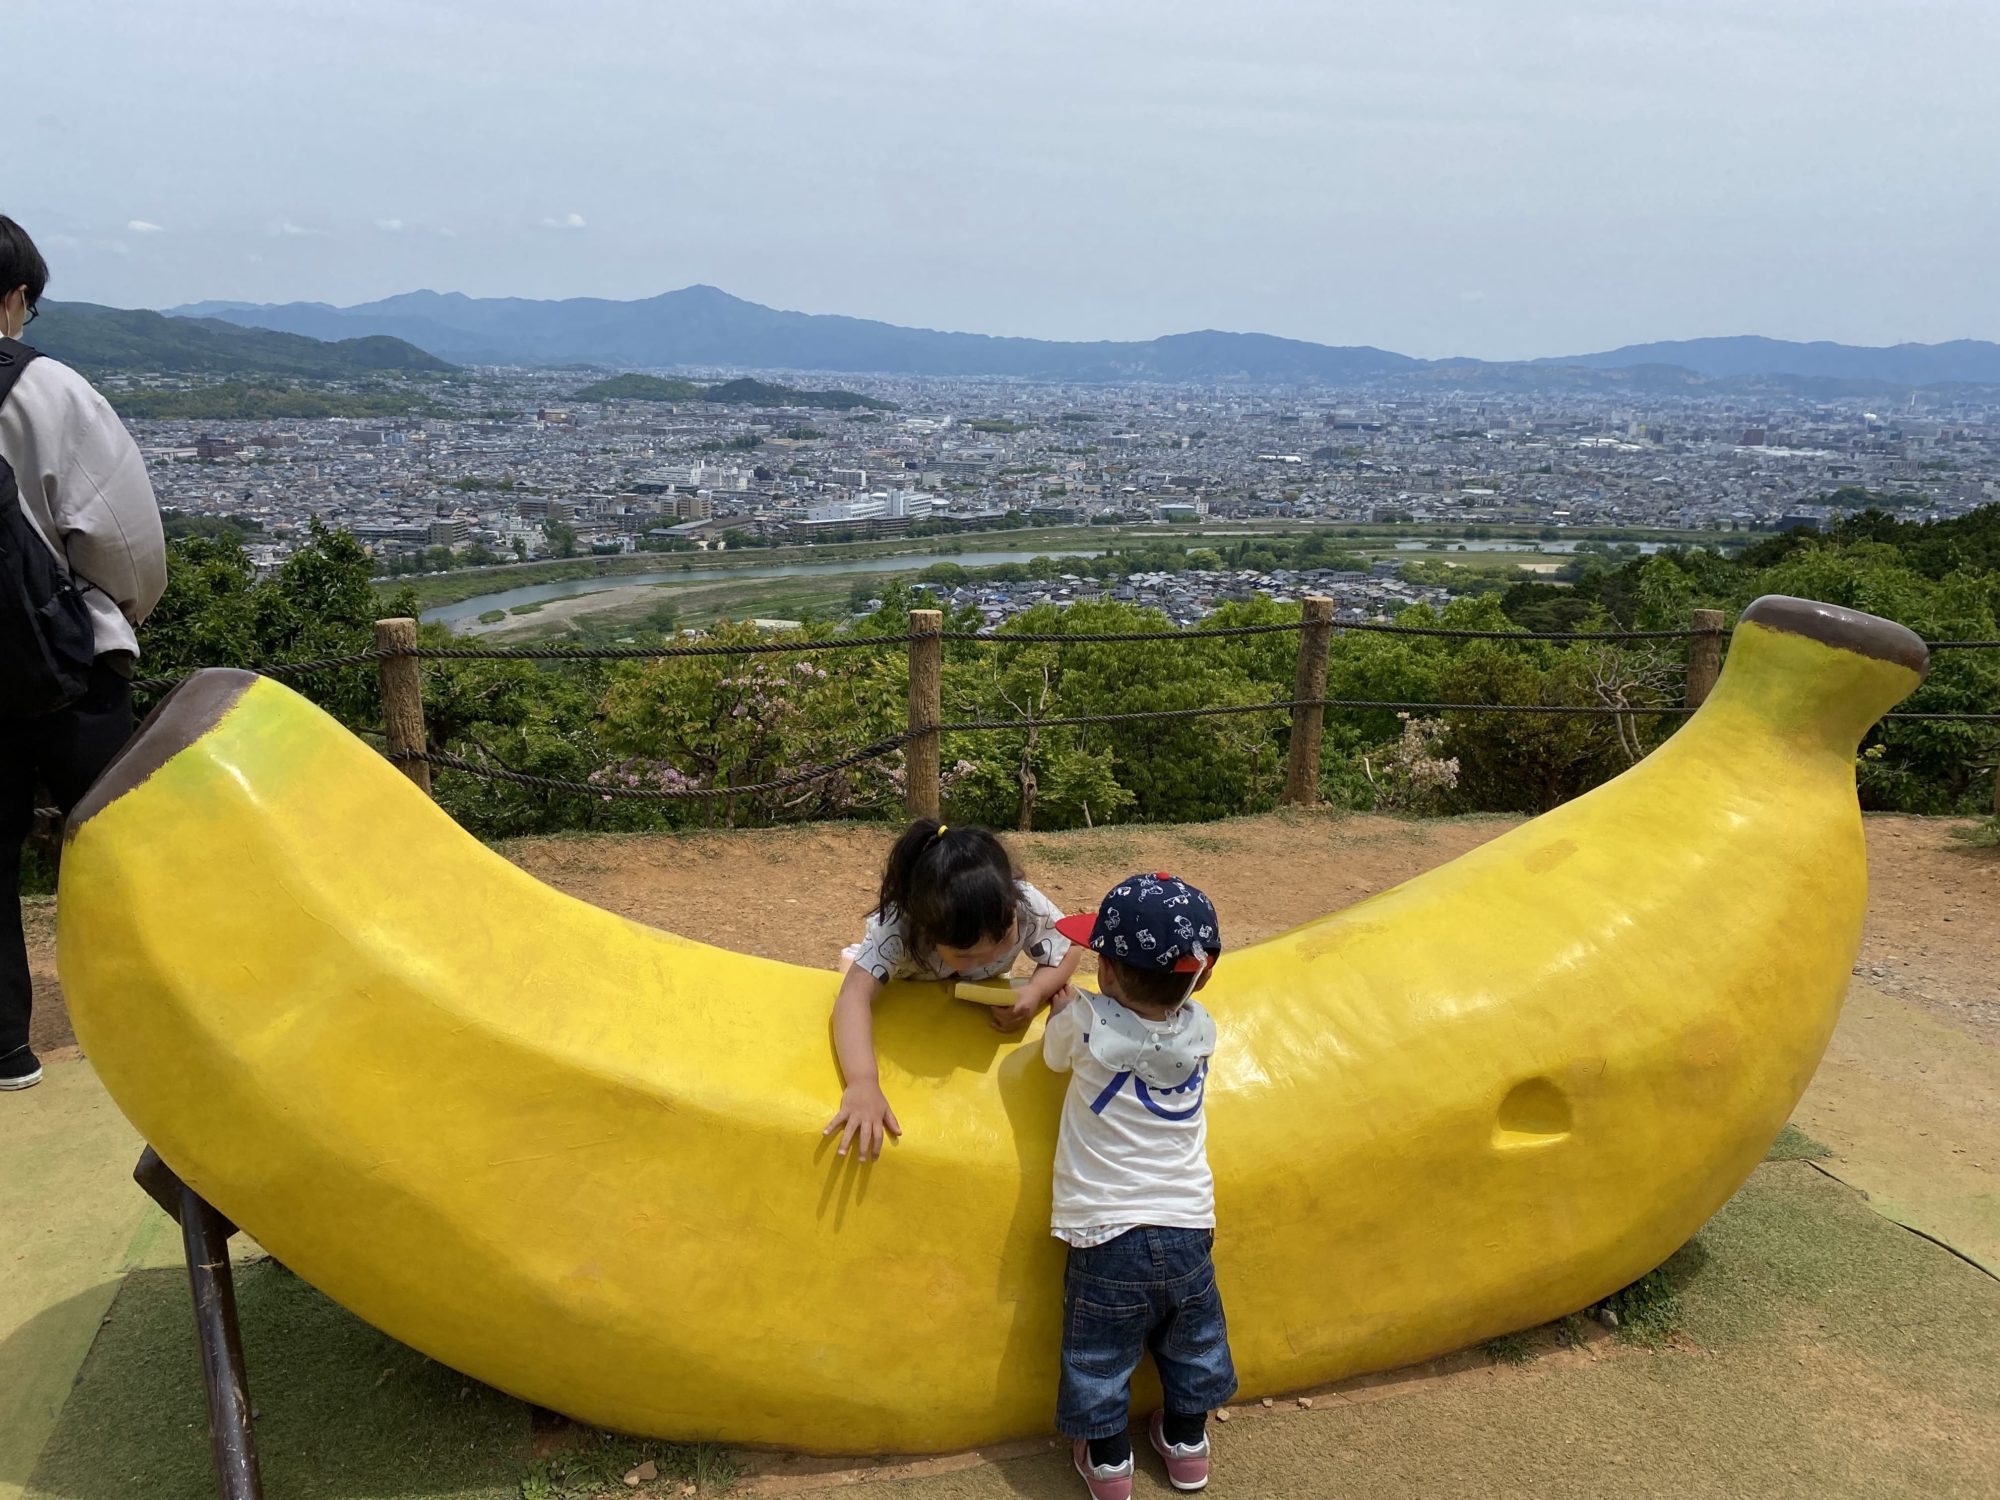 頂上にあったバナナの形の椅子で遊ぶ子どもの写真